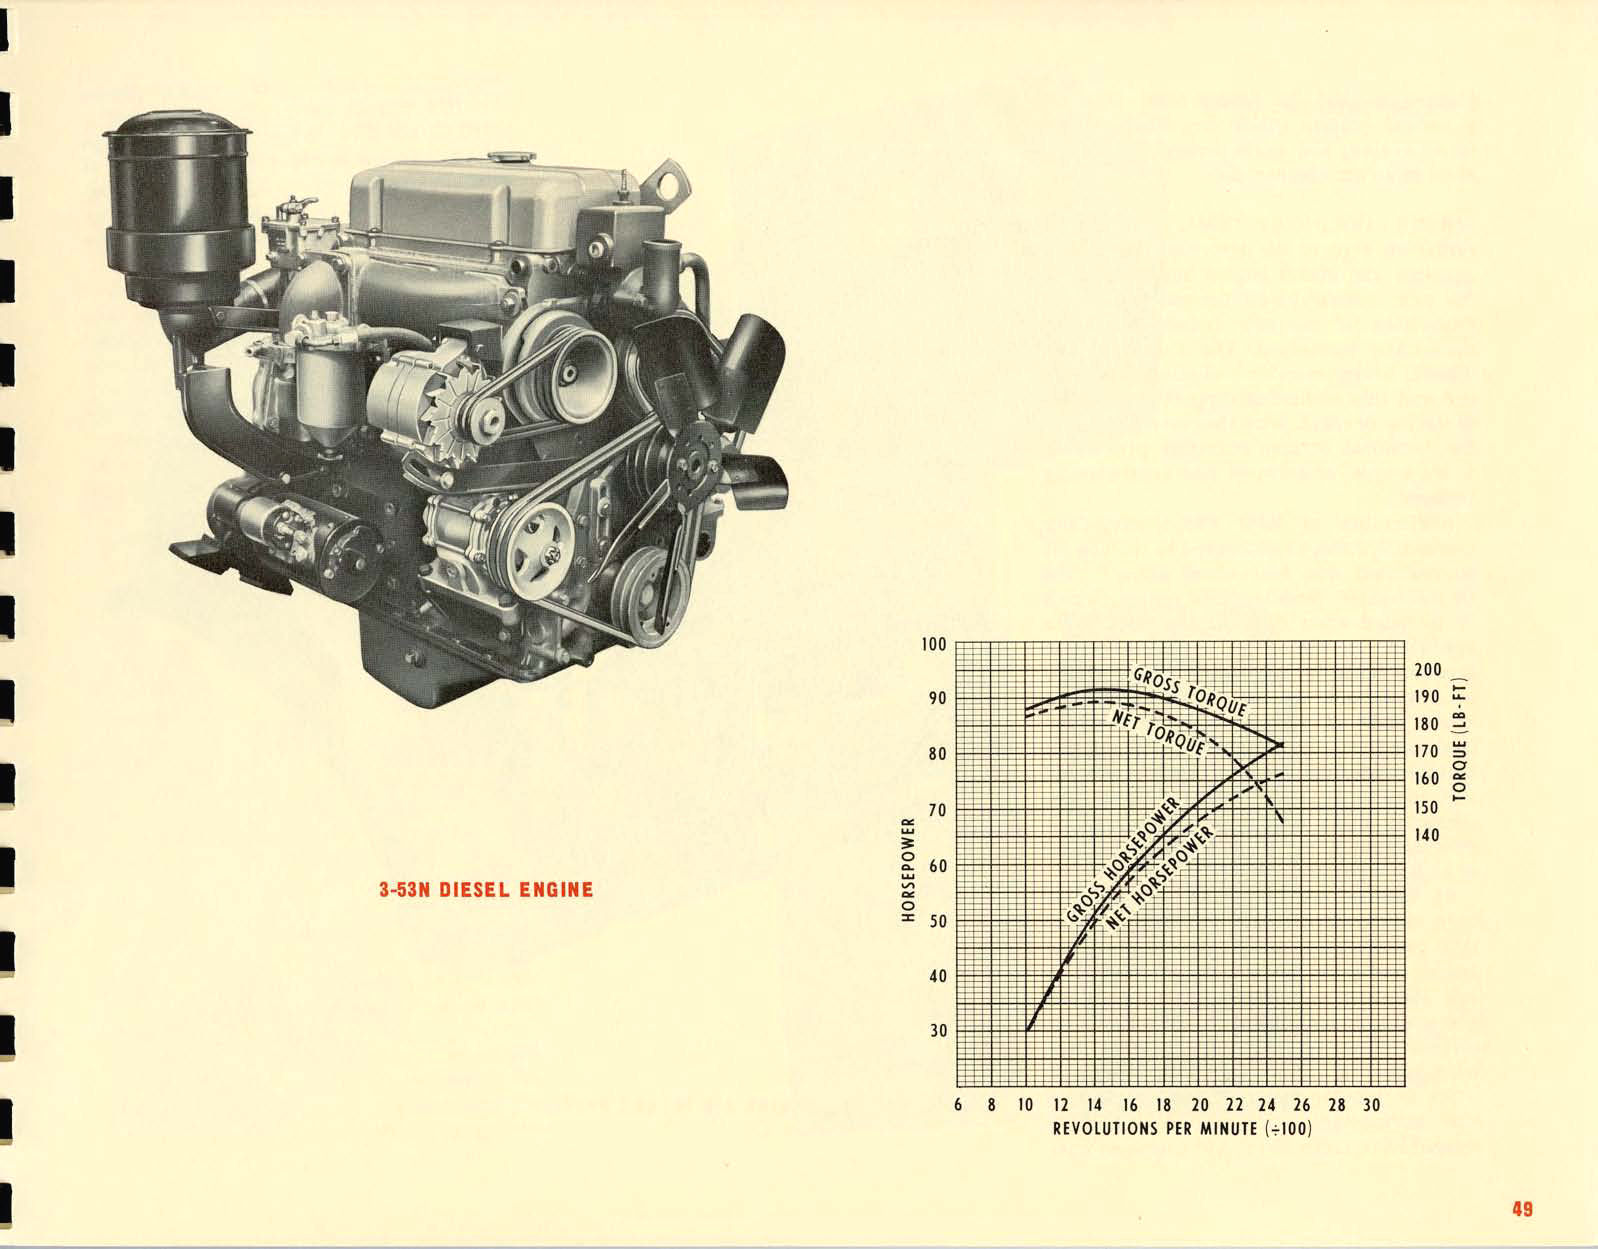 1967_Chevrolet_Truck_Engineering_Features-49